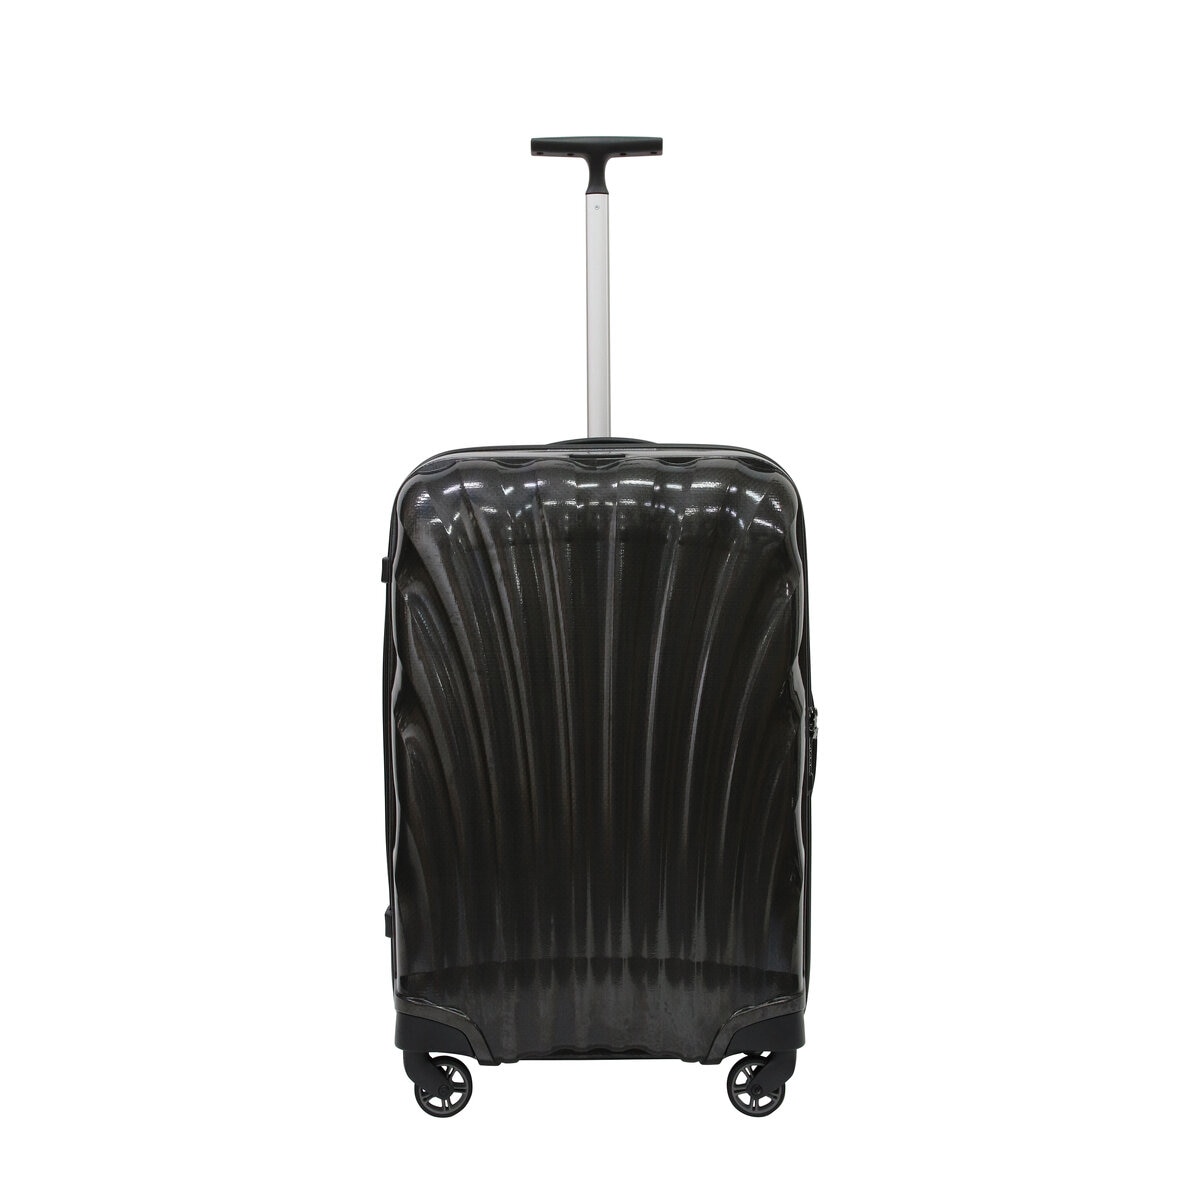 サムソナイト スーツケース コスモライト 3.0 69cm 73350